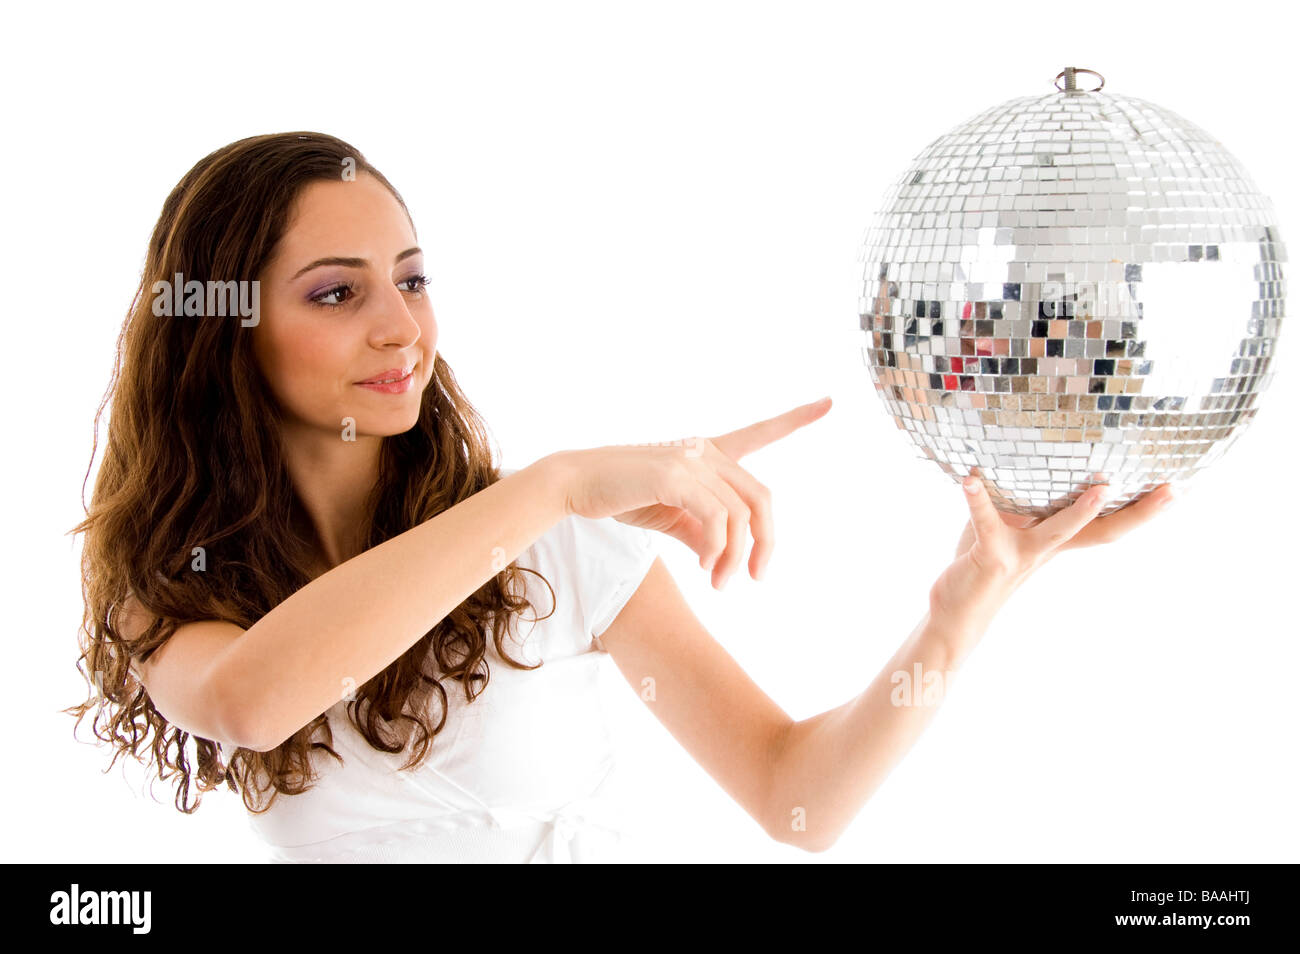 Mädchen mit discokugel Ausgeschnittene Stockfotos und -bilder - Alamy